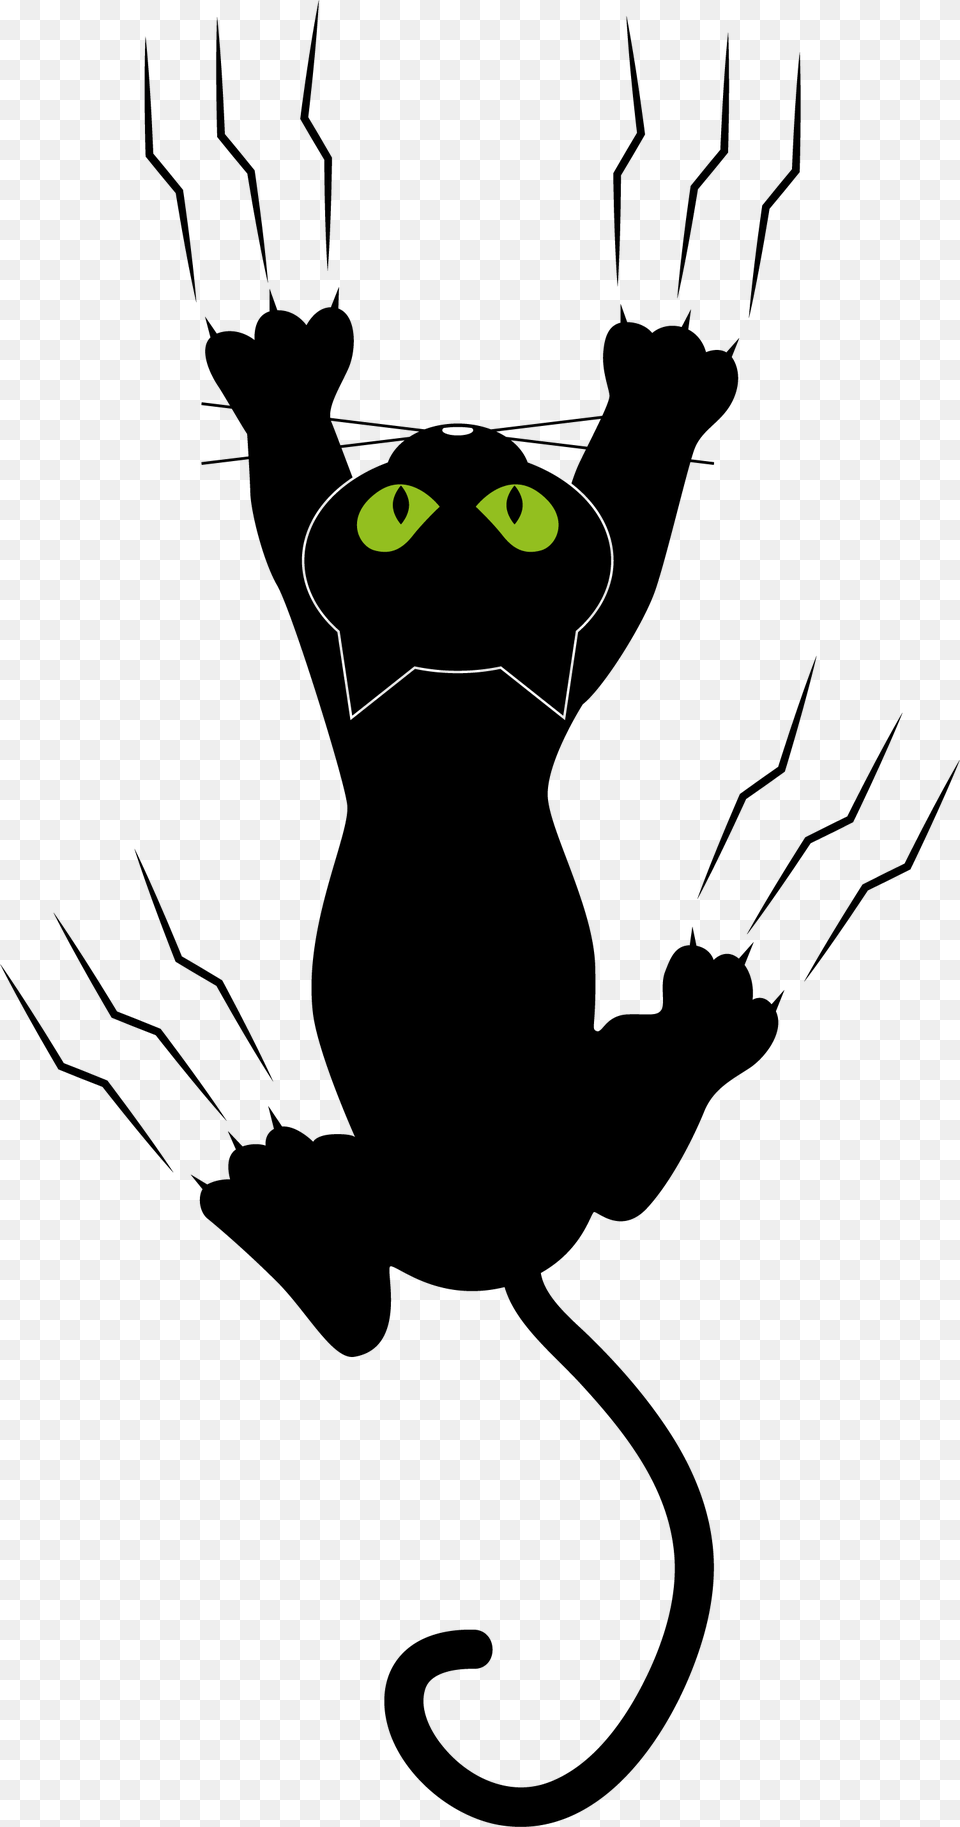 Cat Kitten Dog Paw Gato Escorregando, Silhouette, Stencil, Person, Animal Free Png